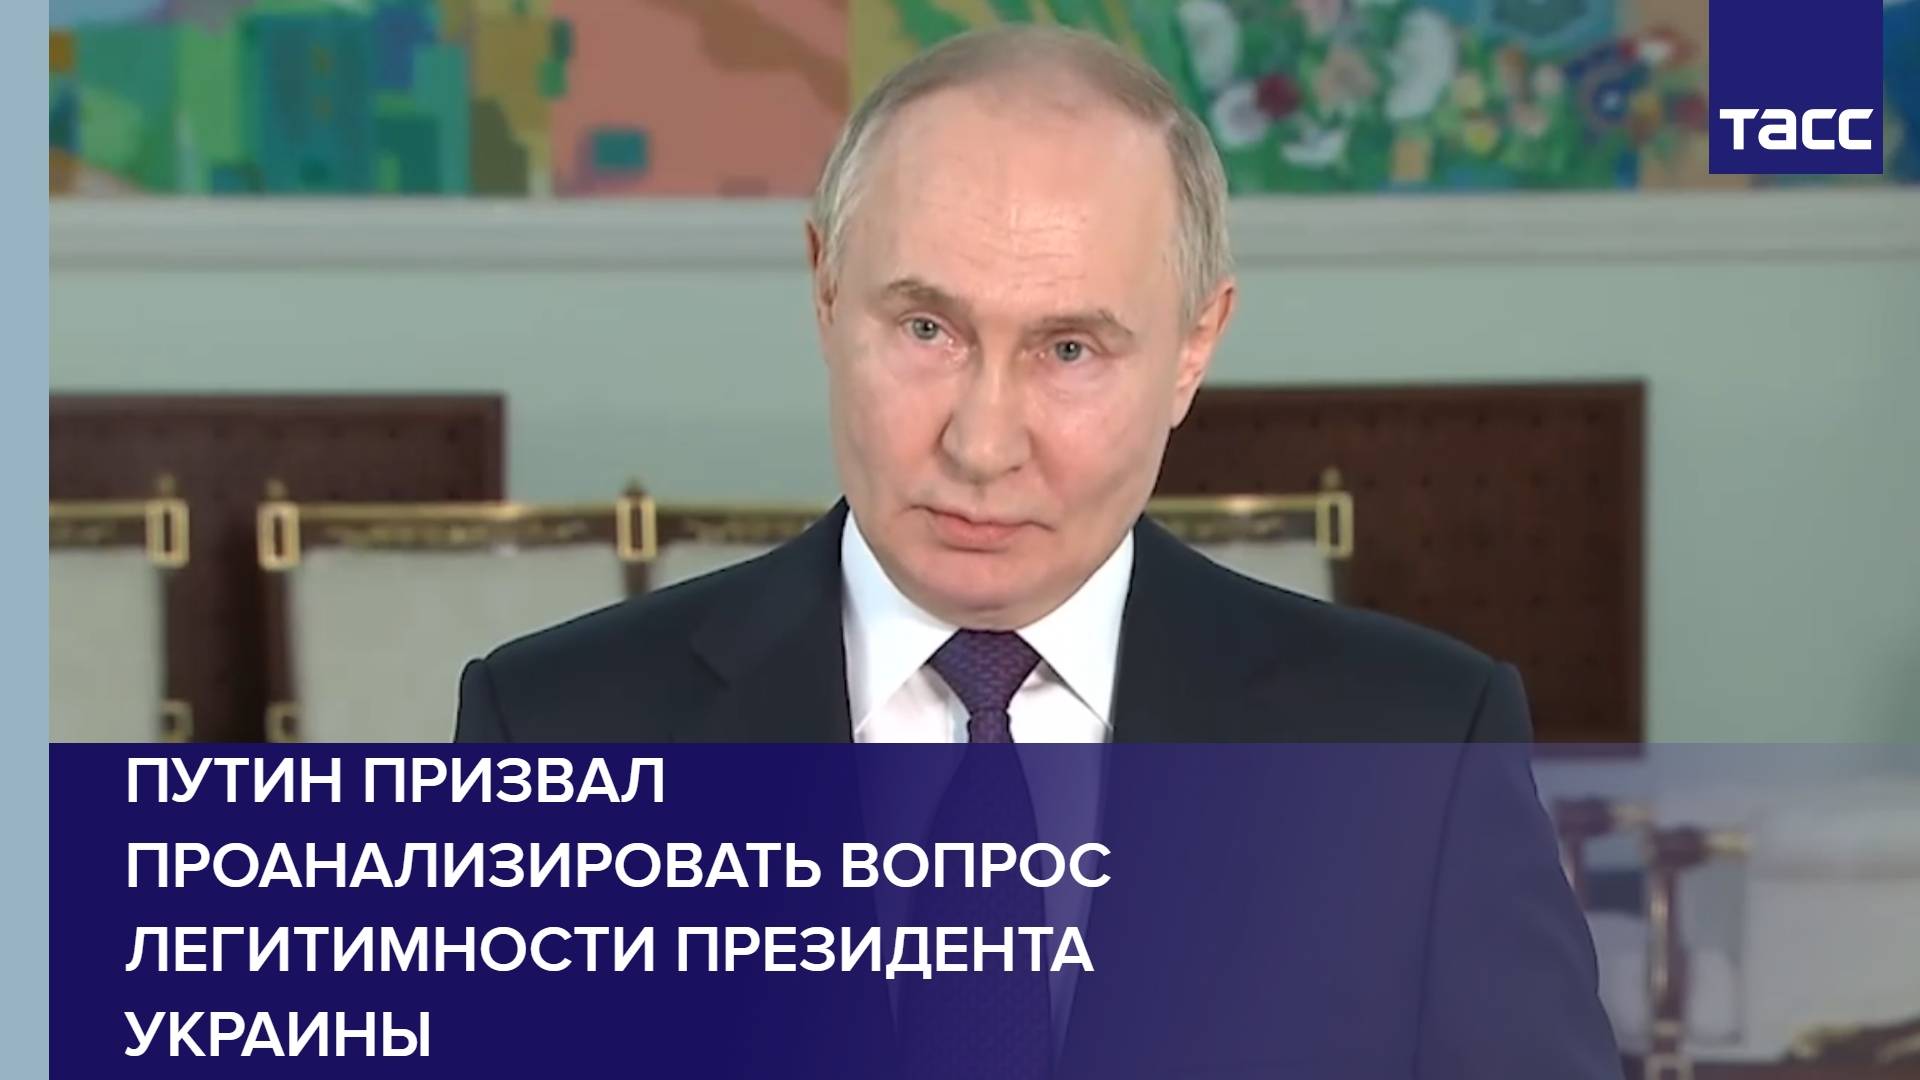 Путин призвал проанализировать вопрос легитимности президента Украины